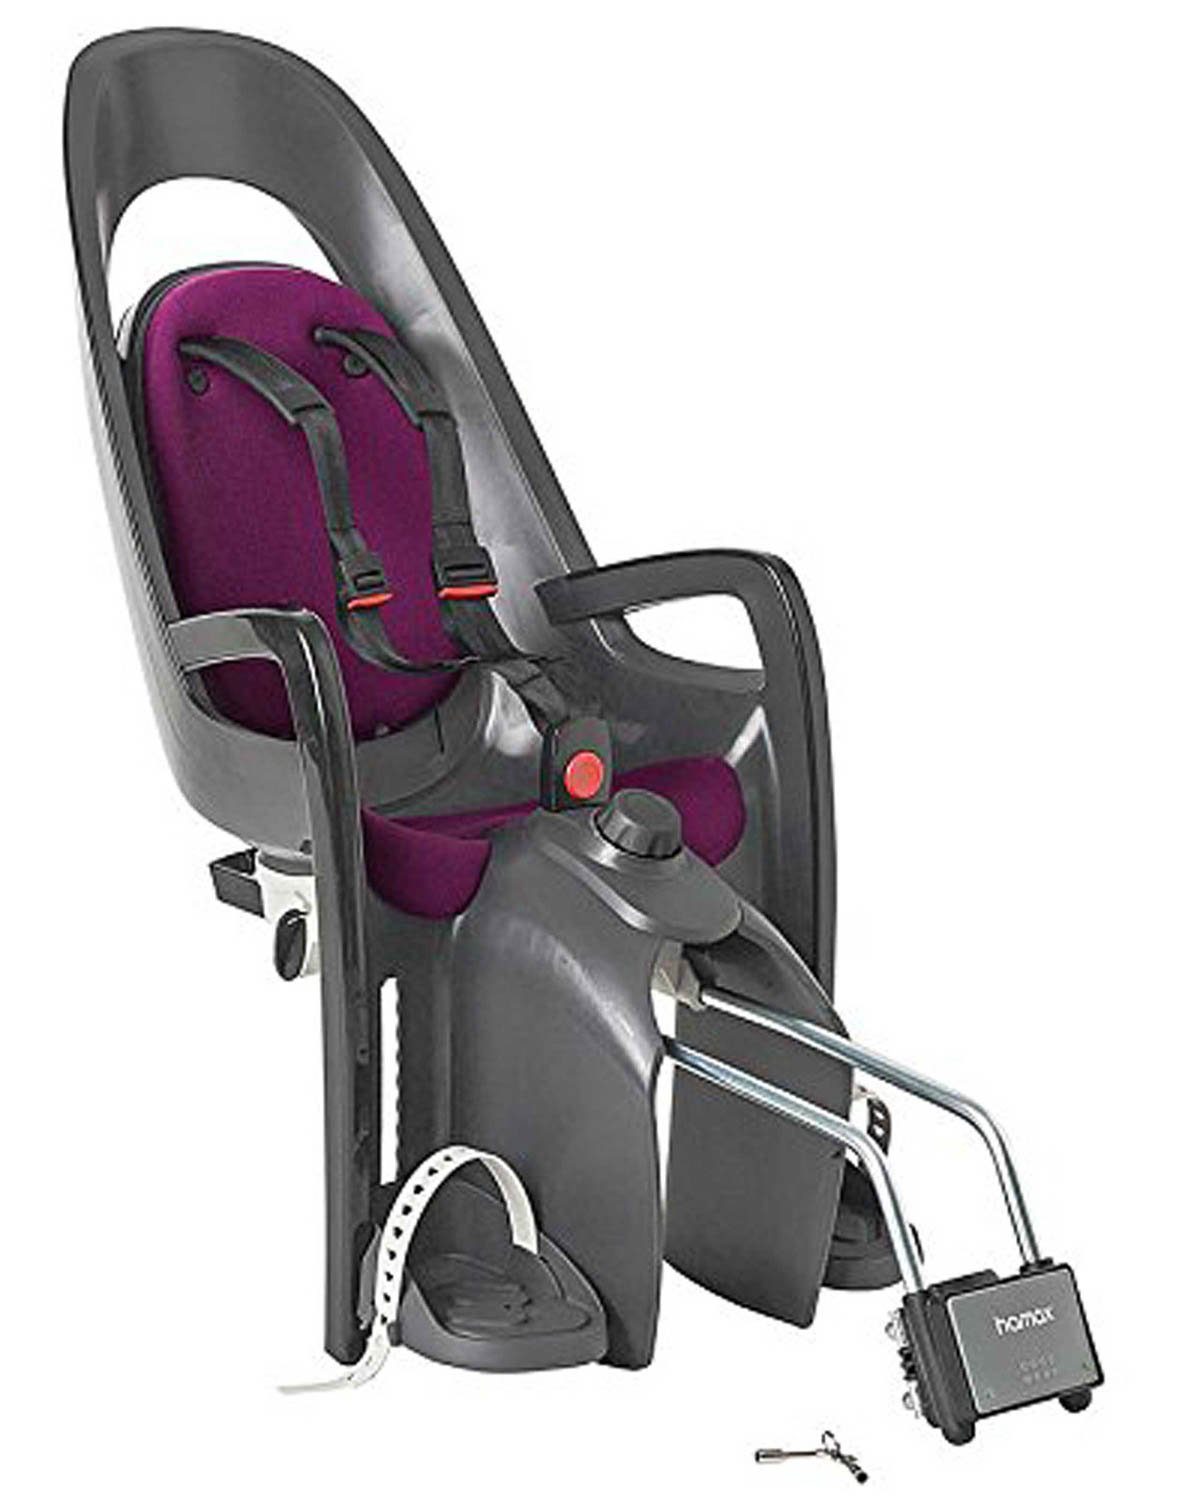 Caress Kindersitz grau/dunkelgrau/purple, 22 bis: Hamax kg Bef. Rahmenrohr, Fahrradkindersitz Hamax